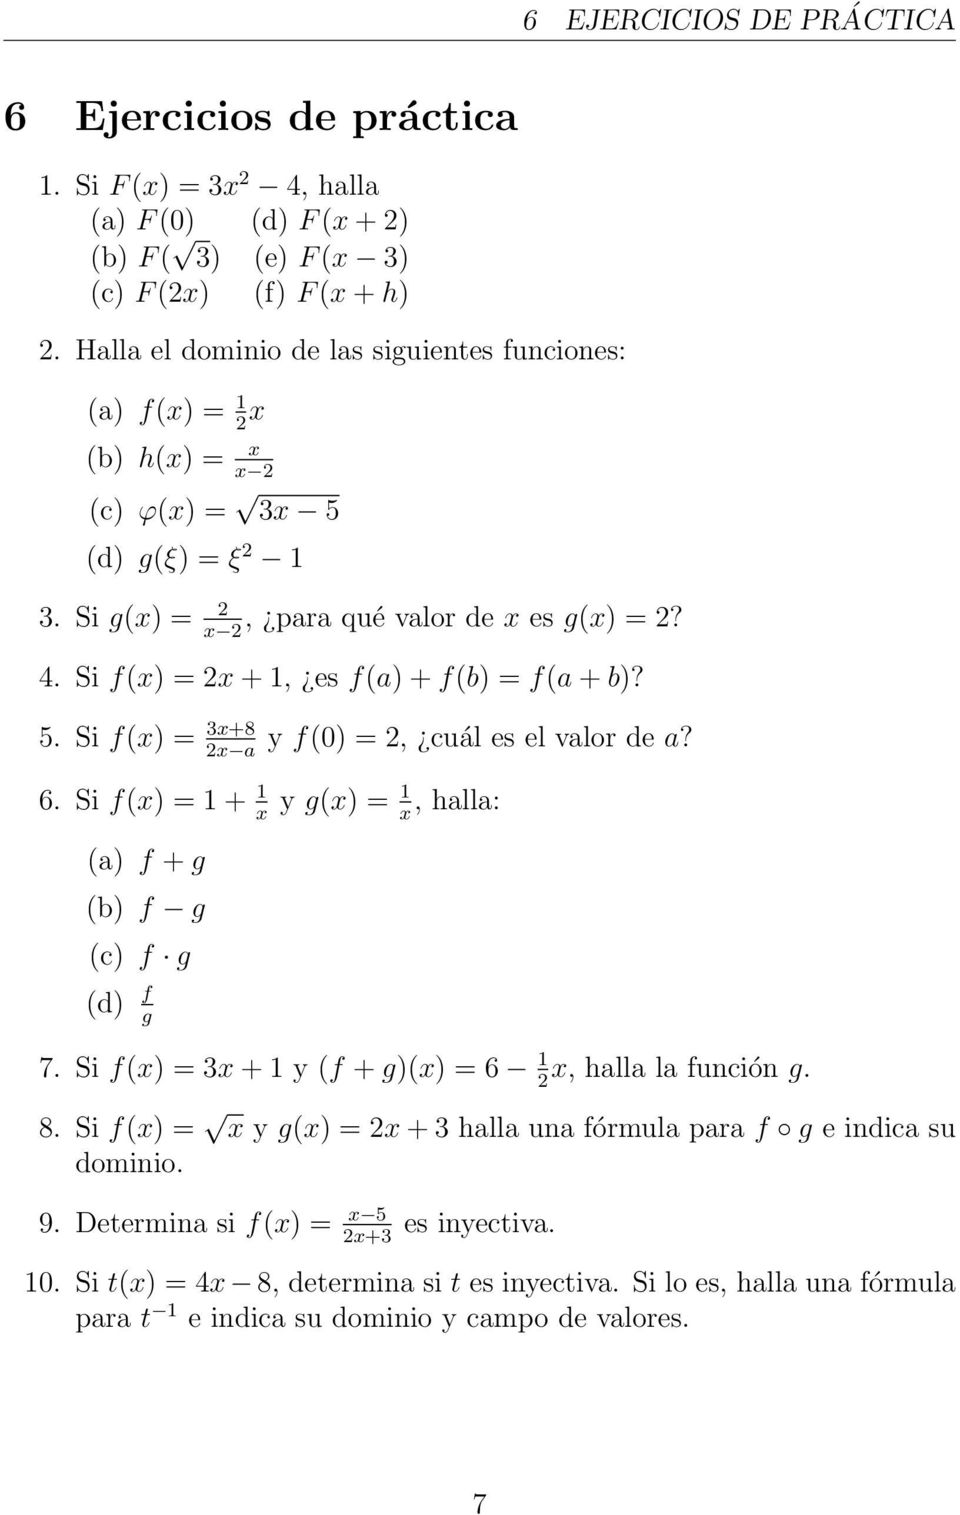 Si f(x) = 2x + 1, es f(a) + f(b) = f(a + b)? 5. Si f(x) = 3x+8 2x a y f(0) = 2, cuál es el valor de a? 6. Si f(x) = 1 + 1 x y g(x) = 1 x, halla: (a) f + g (b) f g (c) f g (d) f g 7.